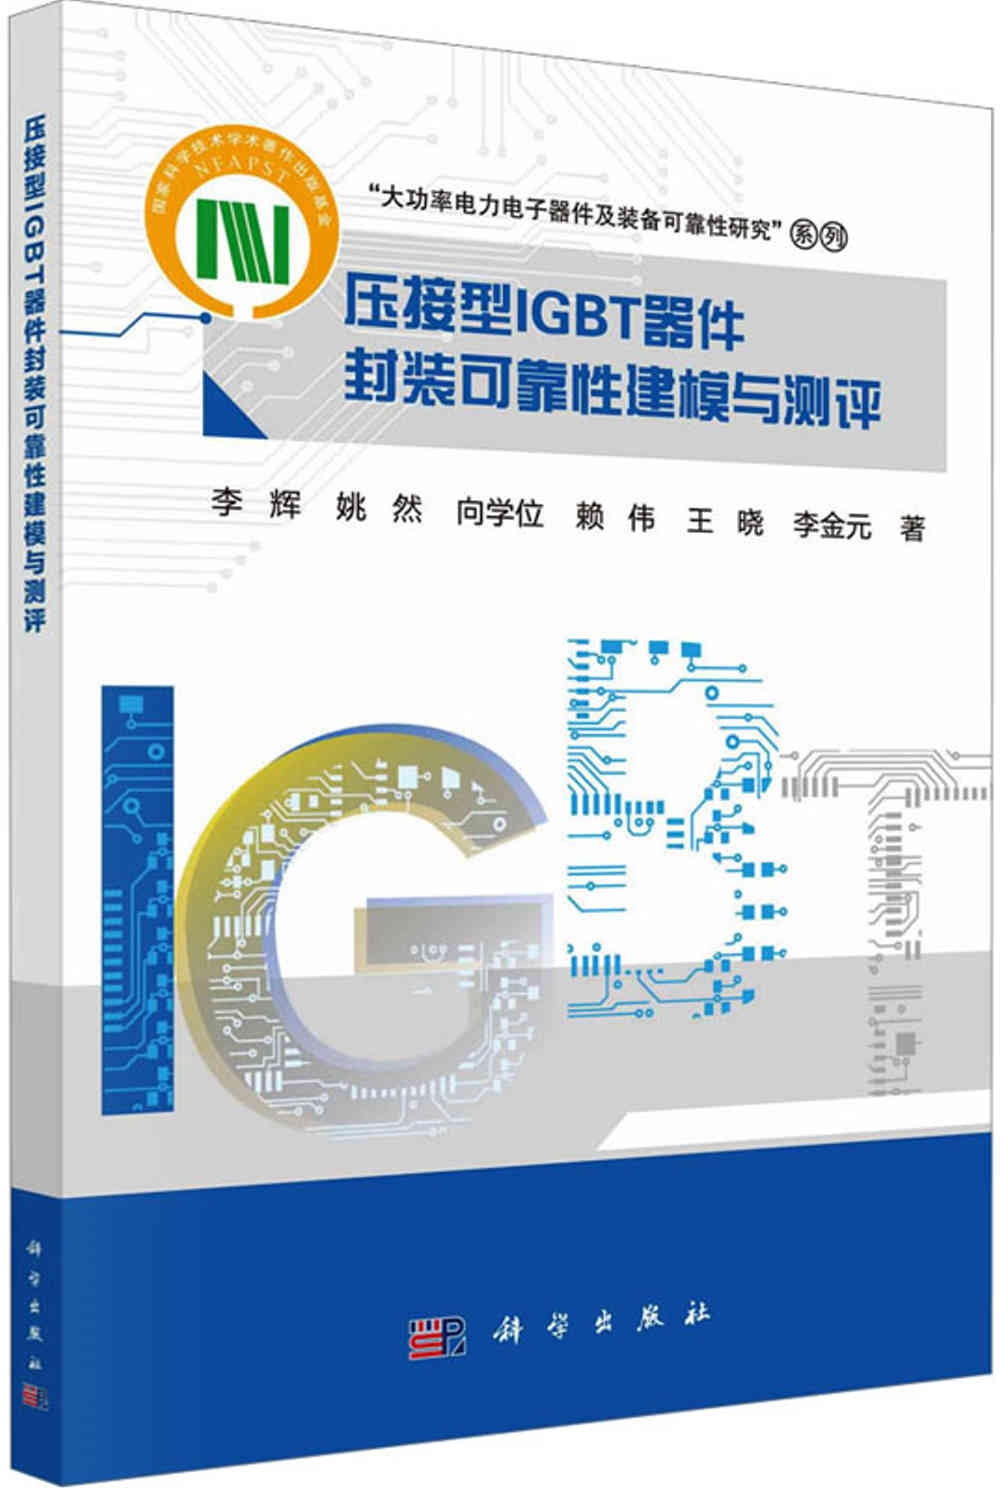 壓接型IGBT器件封裝可靠性建模與測評